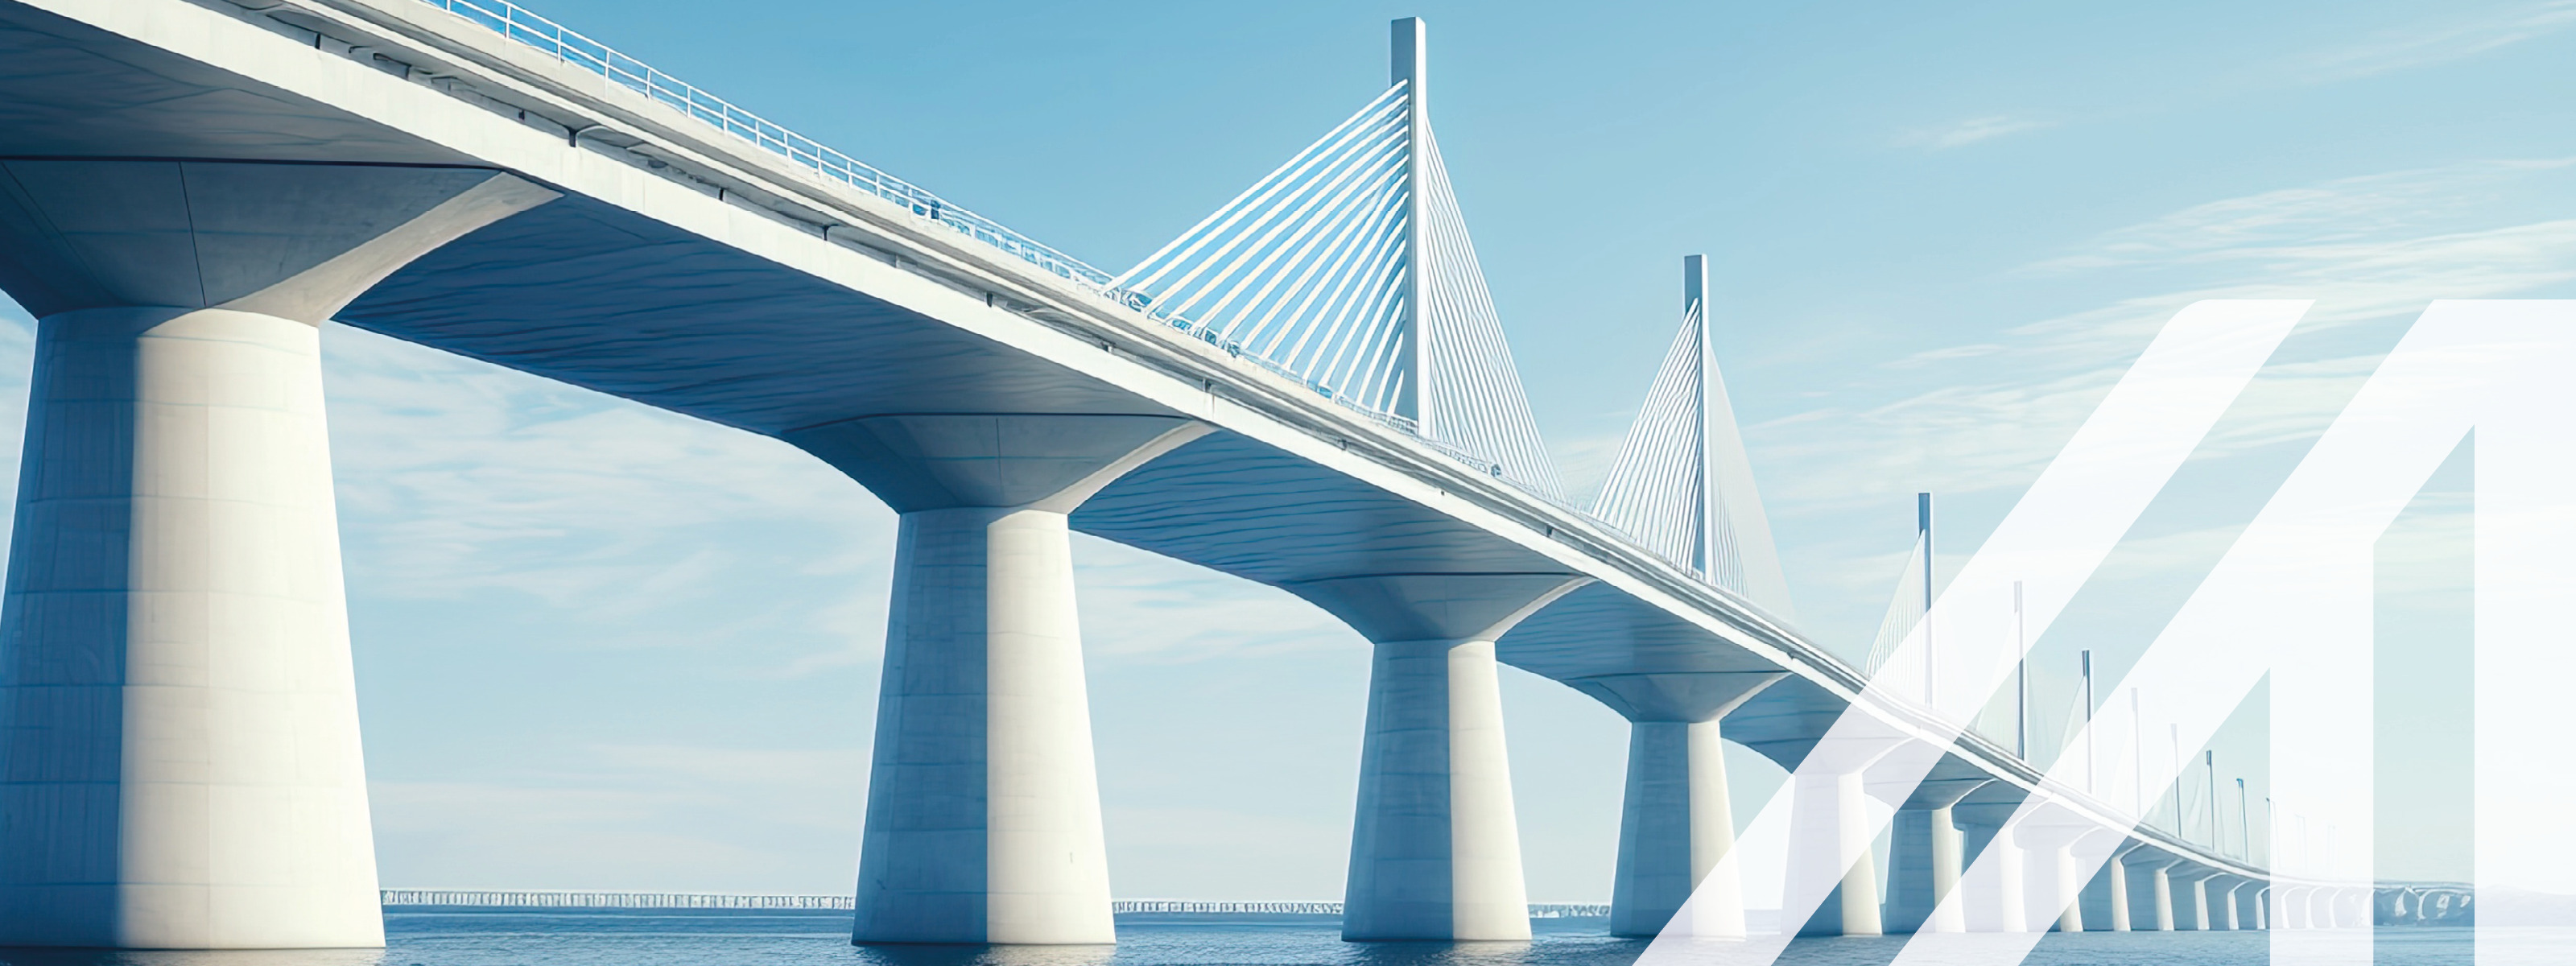 Bild einer modernen Brücke über das Meer, aufgenommen aus einem niedrigen Winkel mit blauem Himmel im Hintergrund.